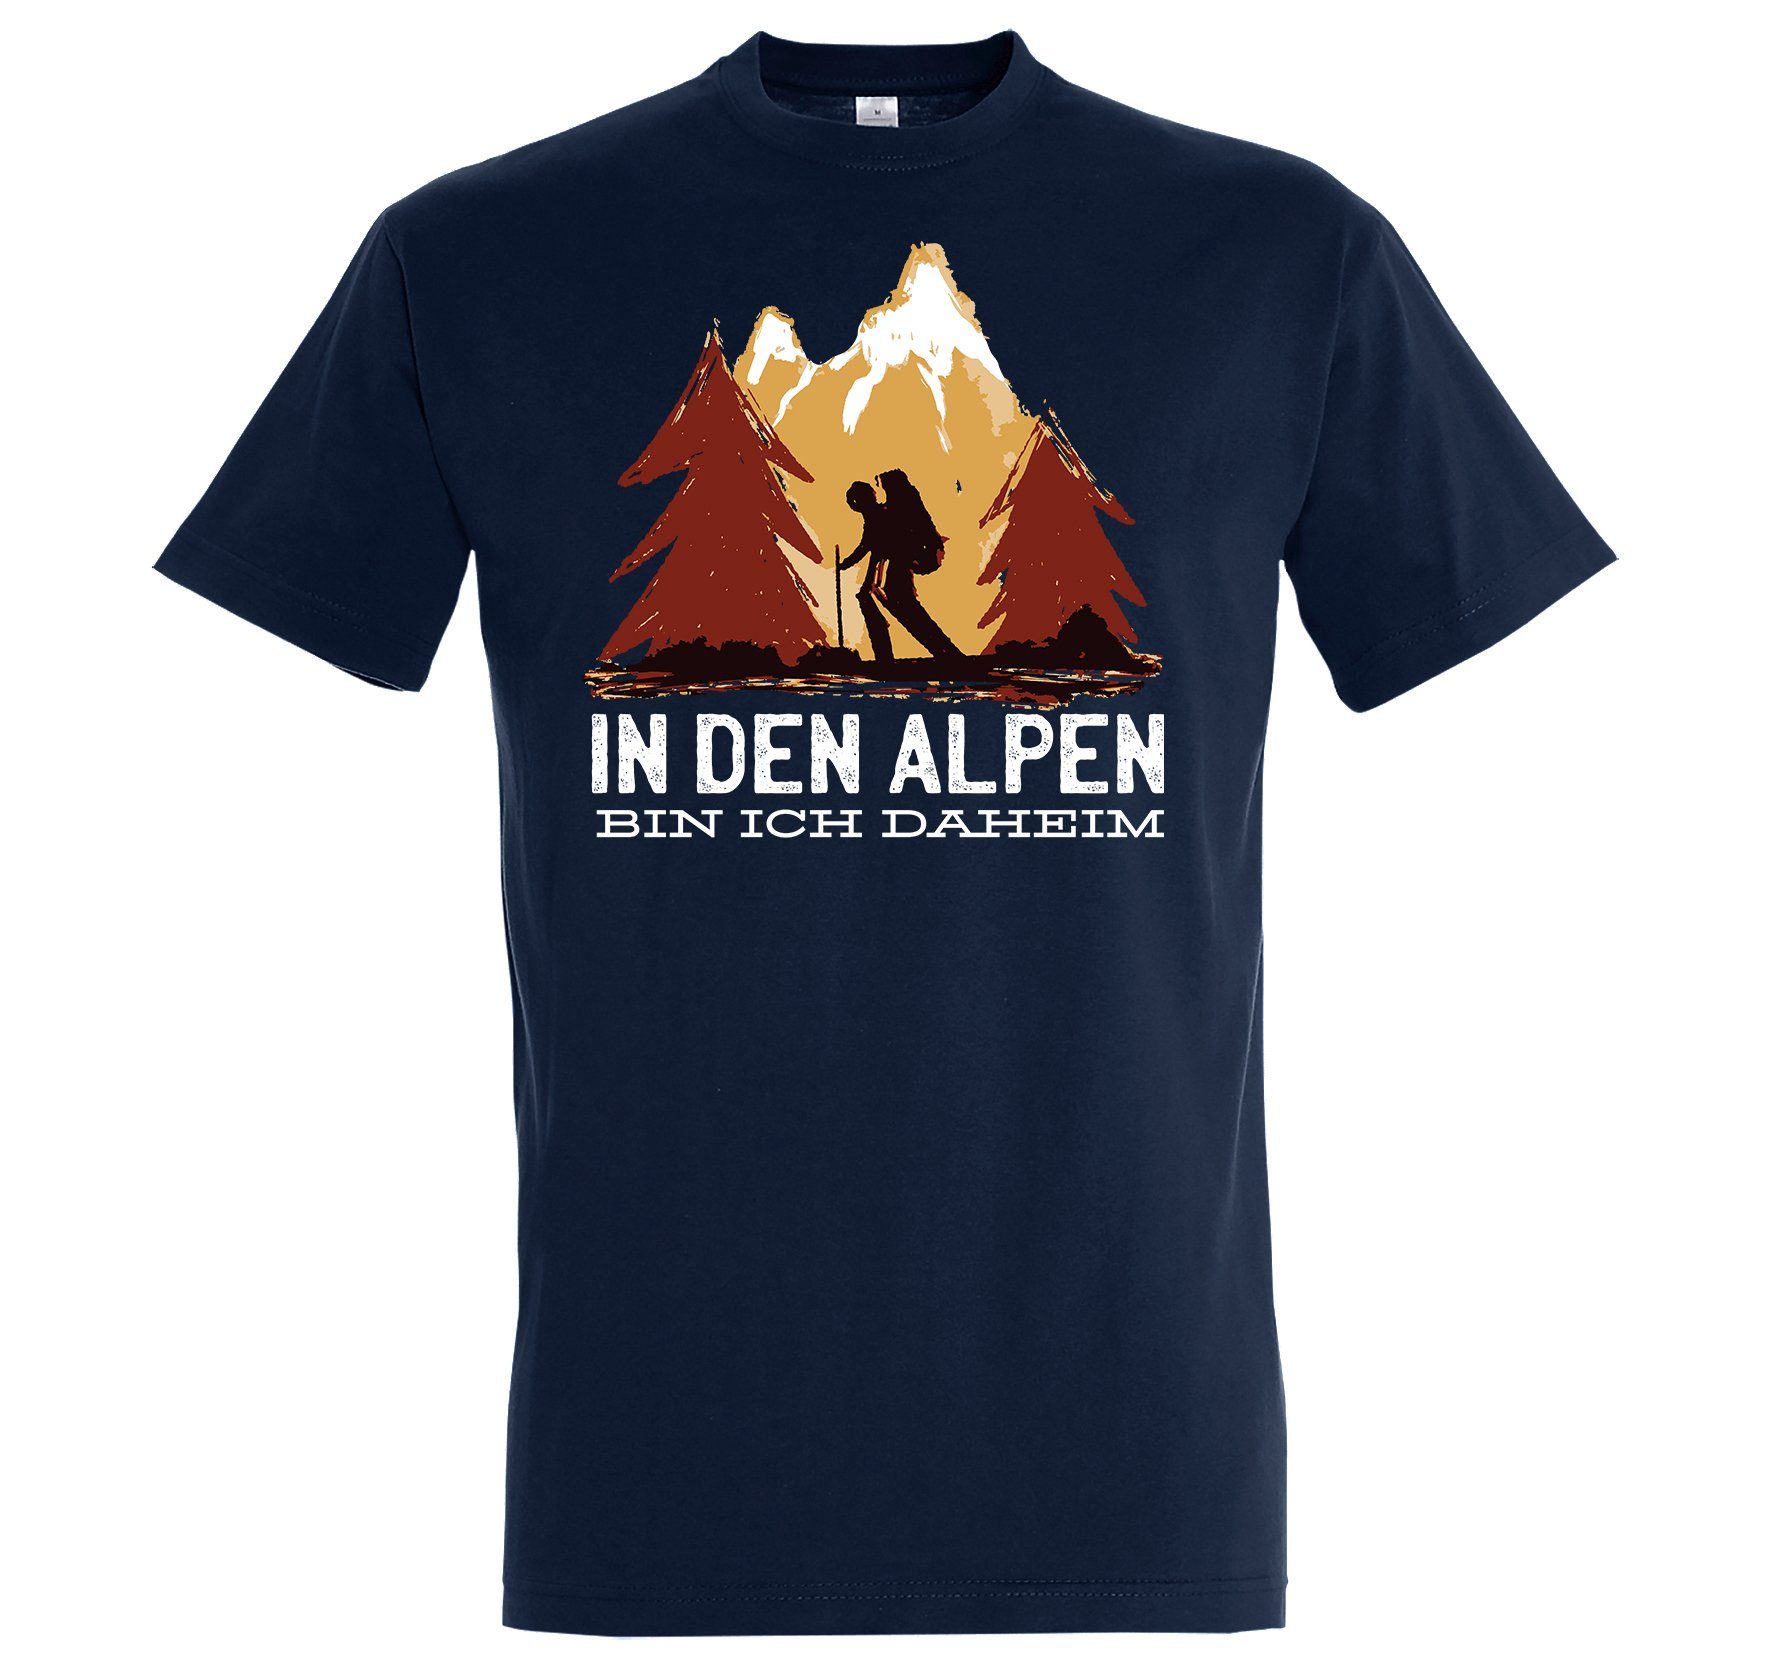 Youth Designz T-Shirt Shirt Alpen Herren Ich Frontprint mit trendigem Den Daheim Navyblau In Bin